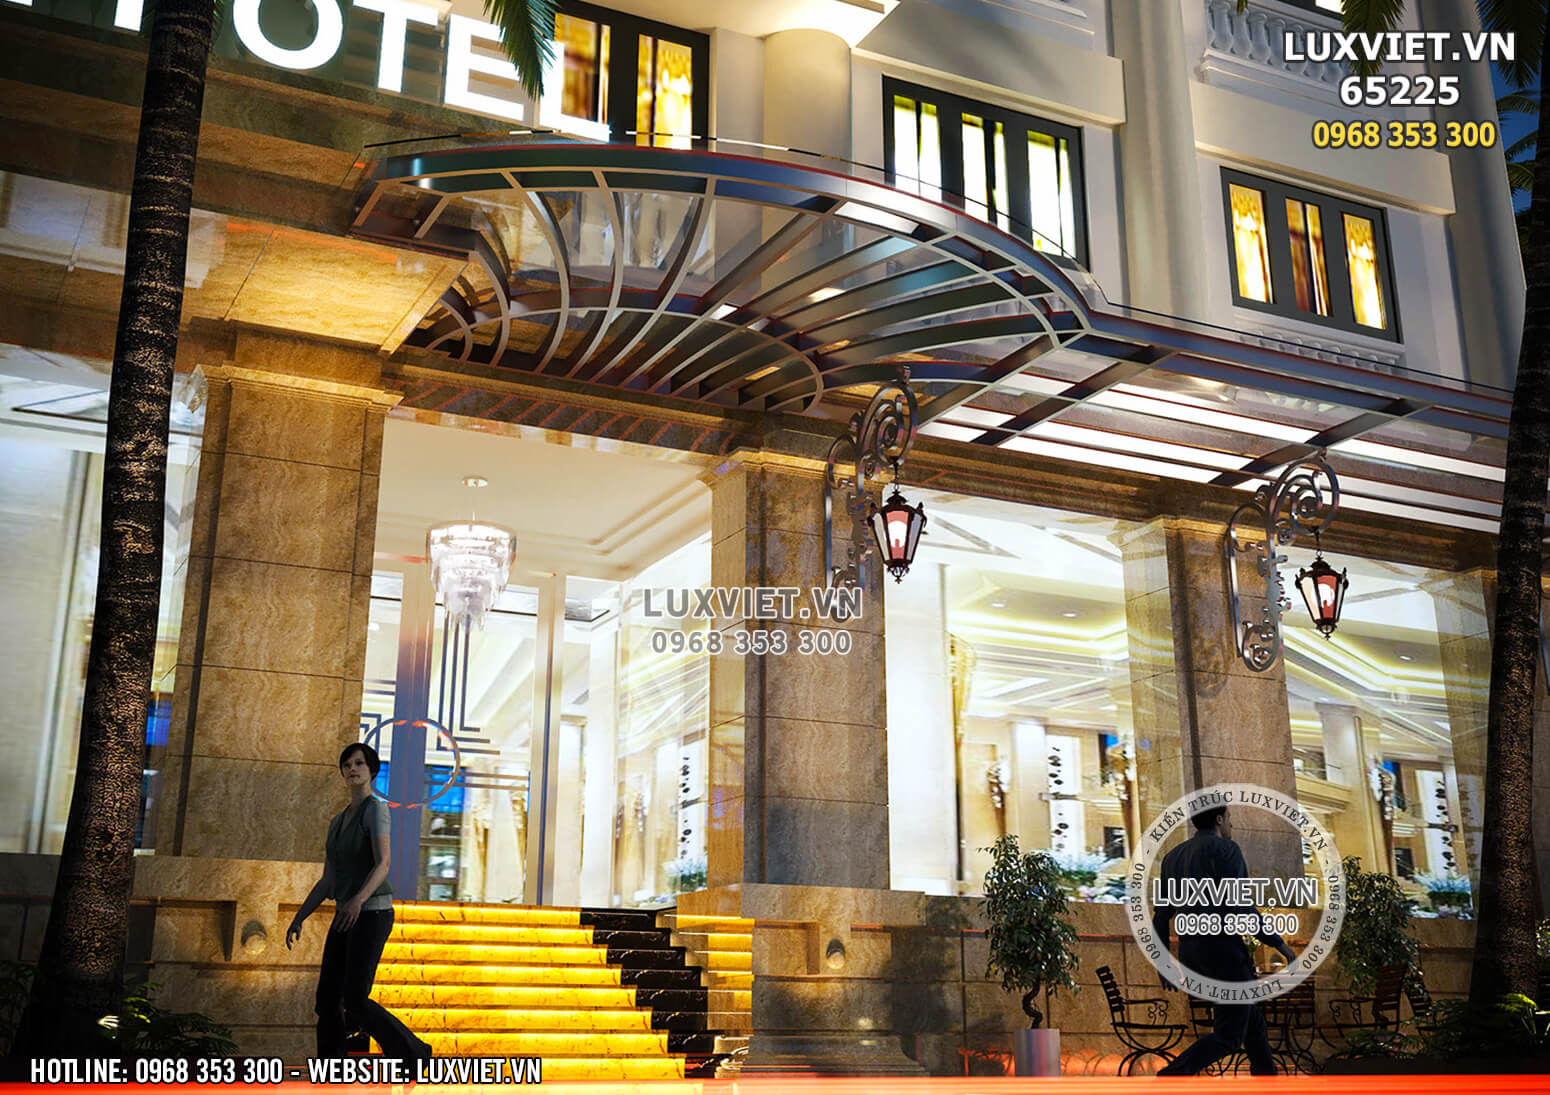 Hình ảnh: Thiết kế sảnh khách sạn đẹp và lịch lãm - LV 65225